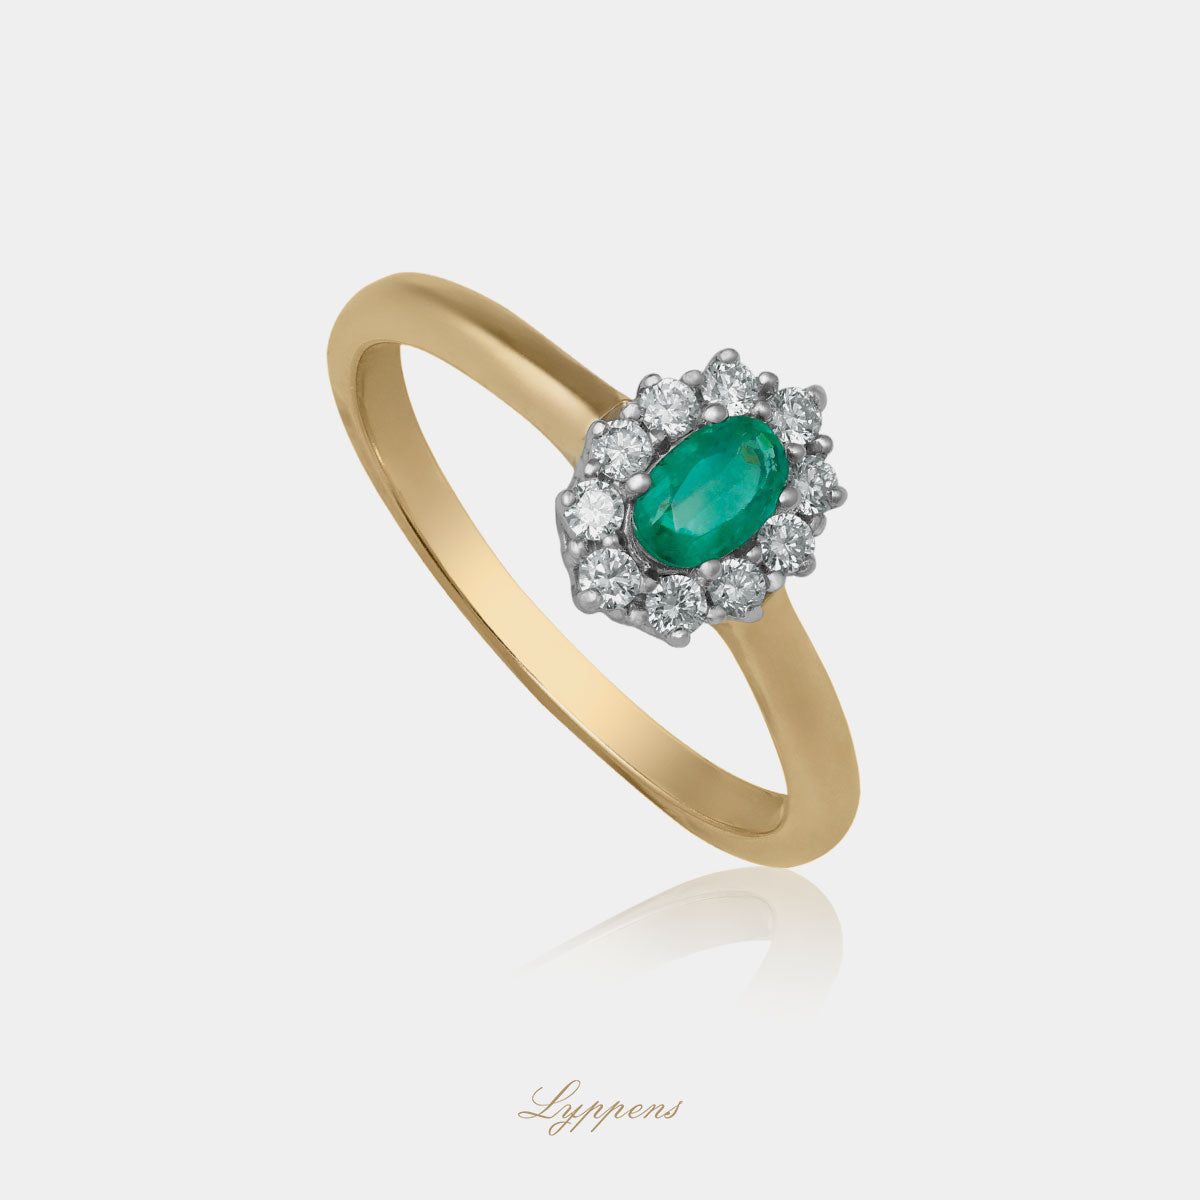 Geel - met witgouden entourage ring in het midden gezet met een ovaal geslepen smaragd en in een entourage van briljant geslepen diamant.